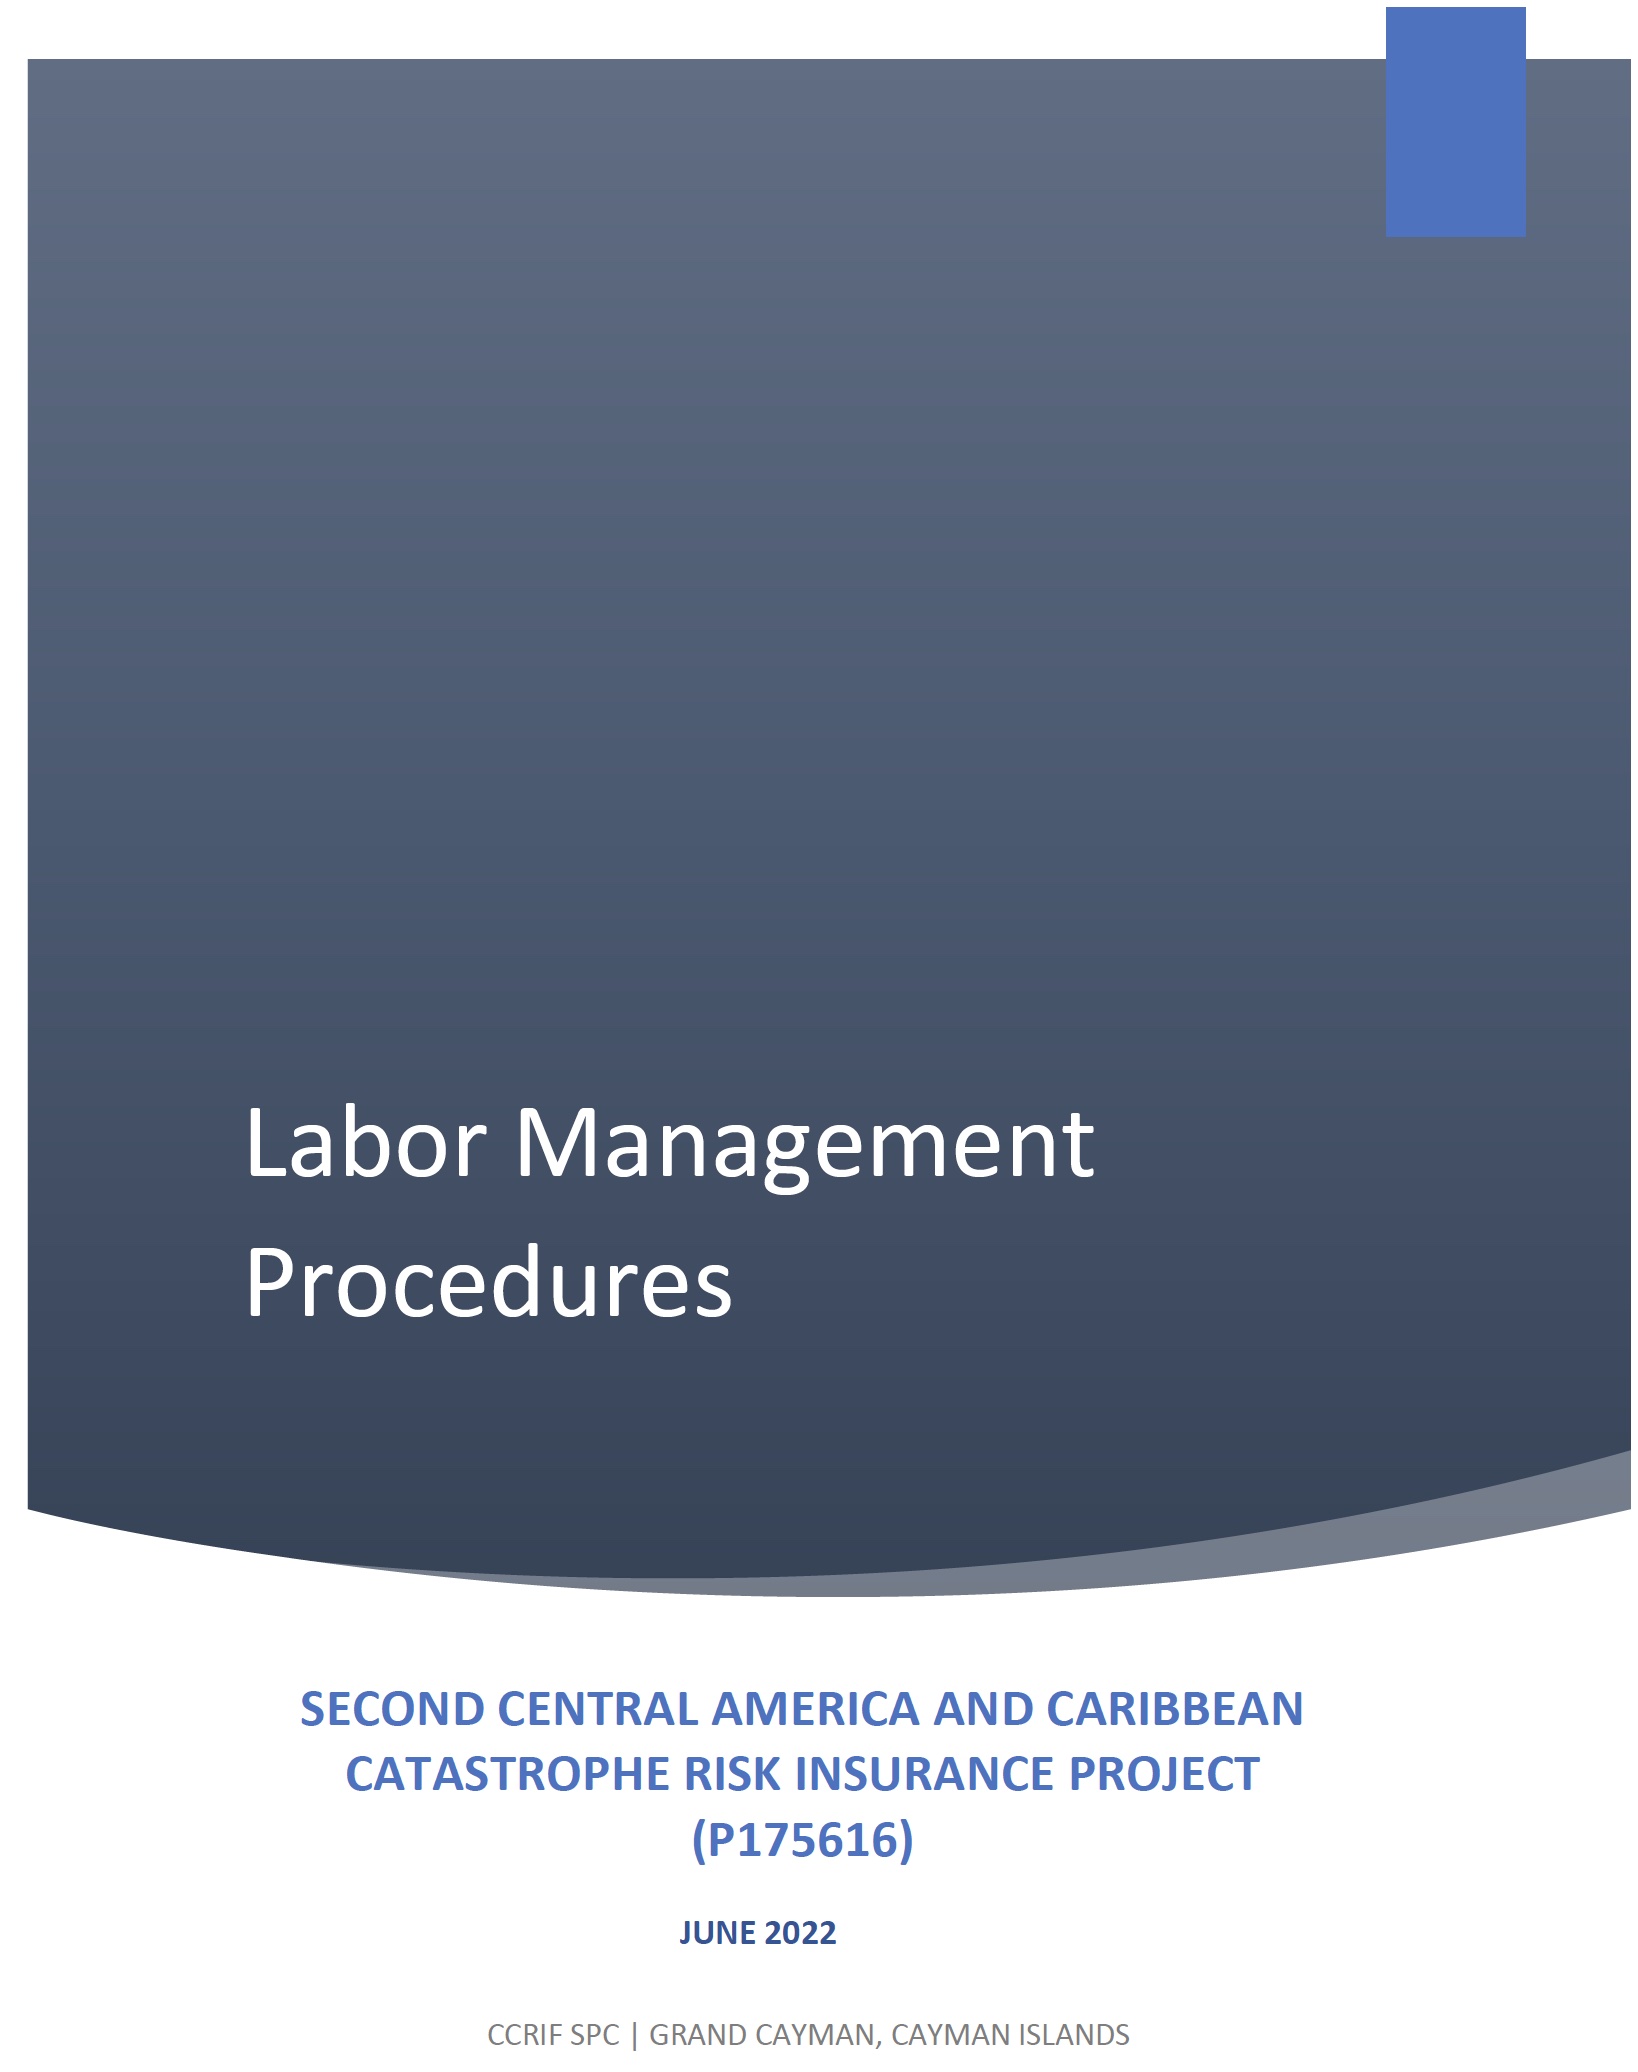 CCRIF SPC Labor Management Procedures - June 2022